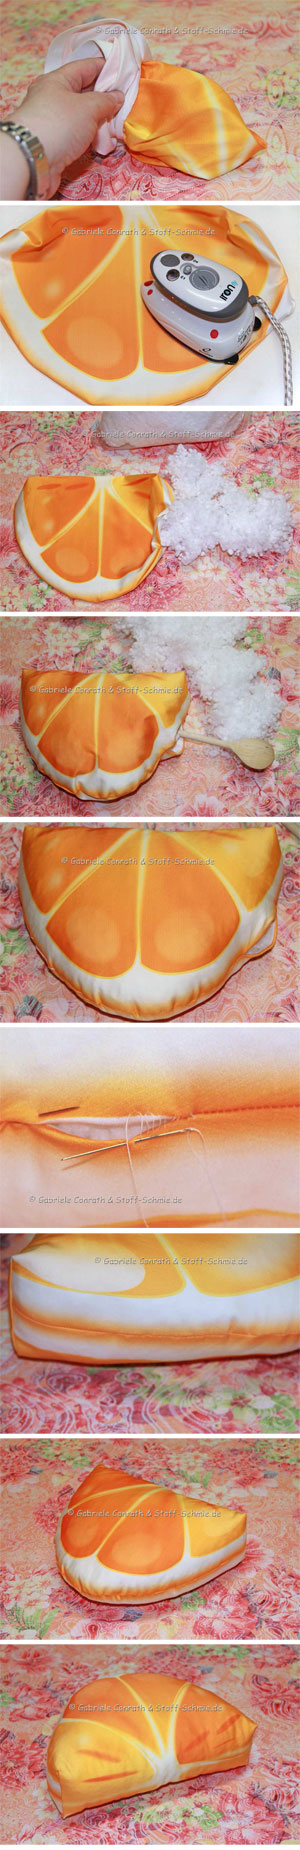 Orange einfach als Kissen umsetzen